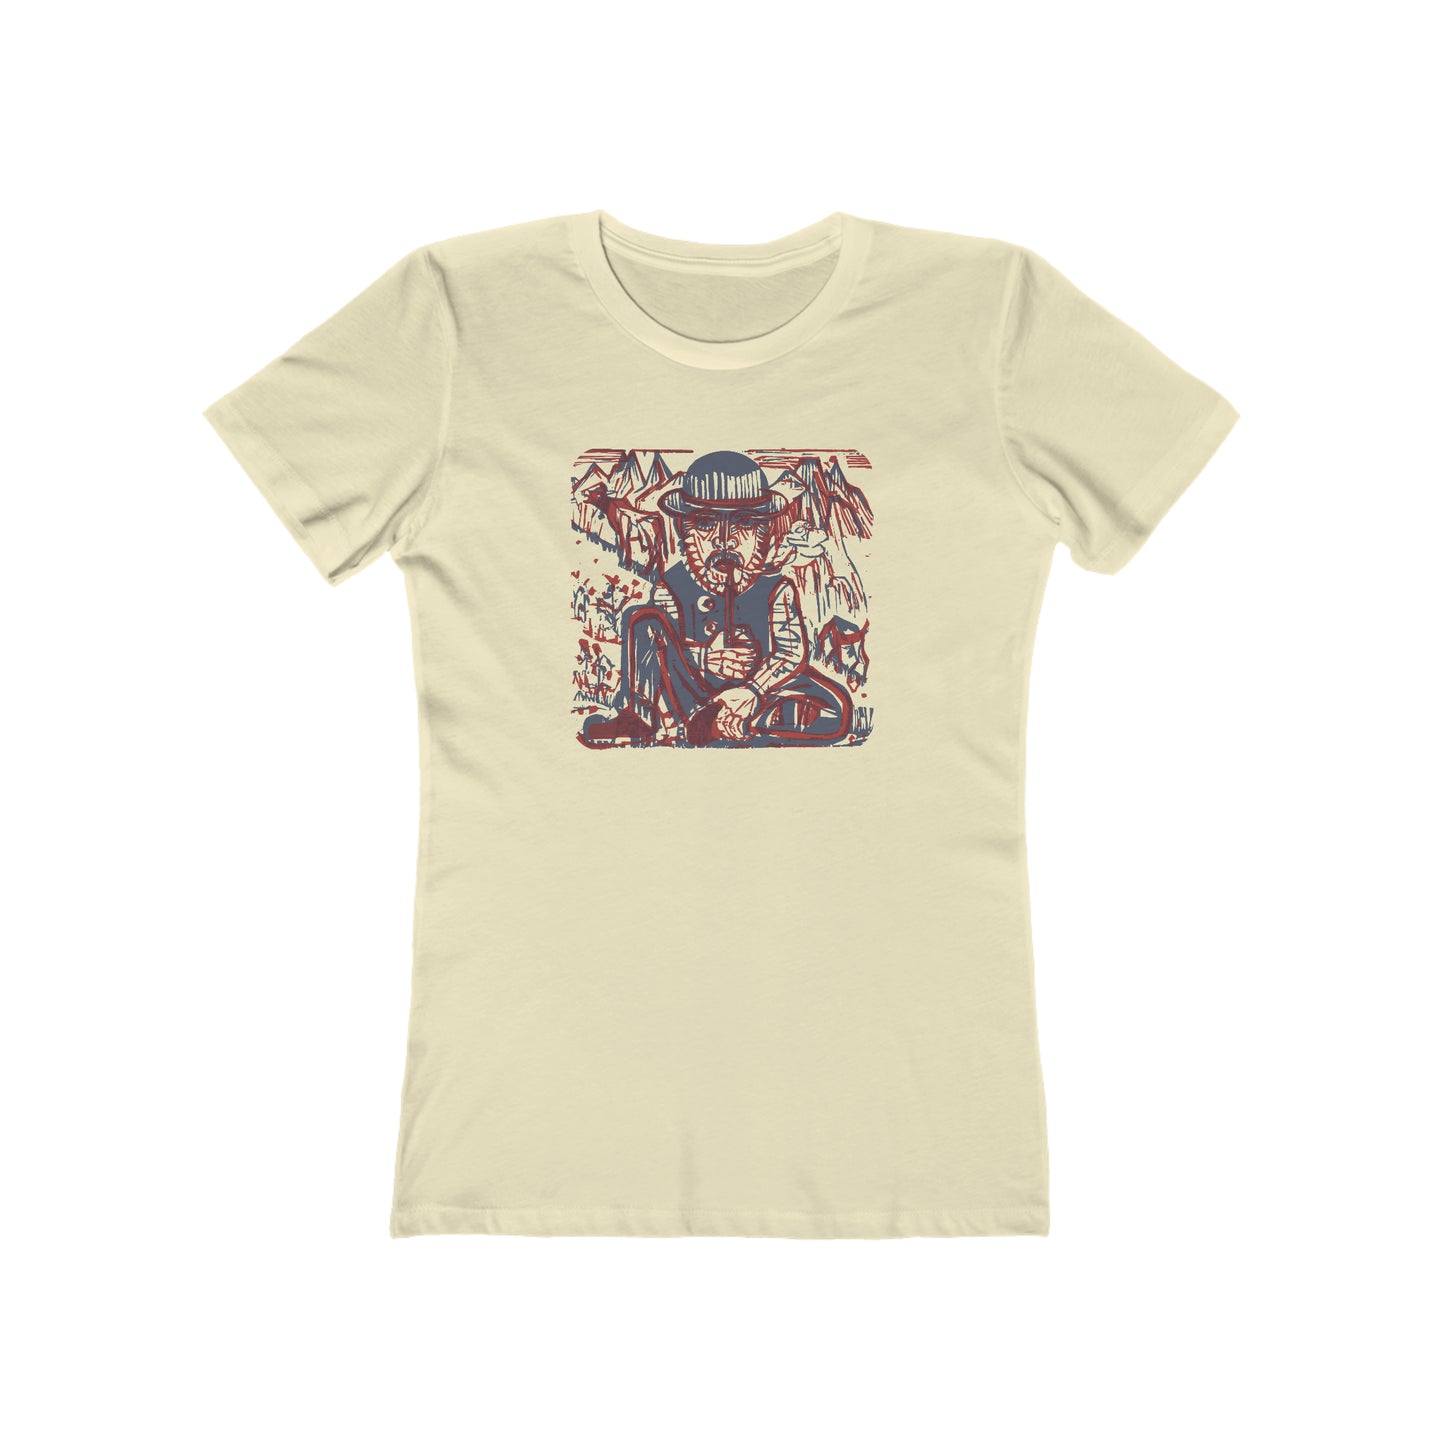 Mountain Man - Women's T-Shirt